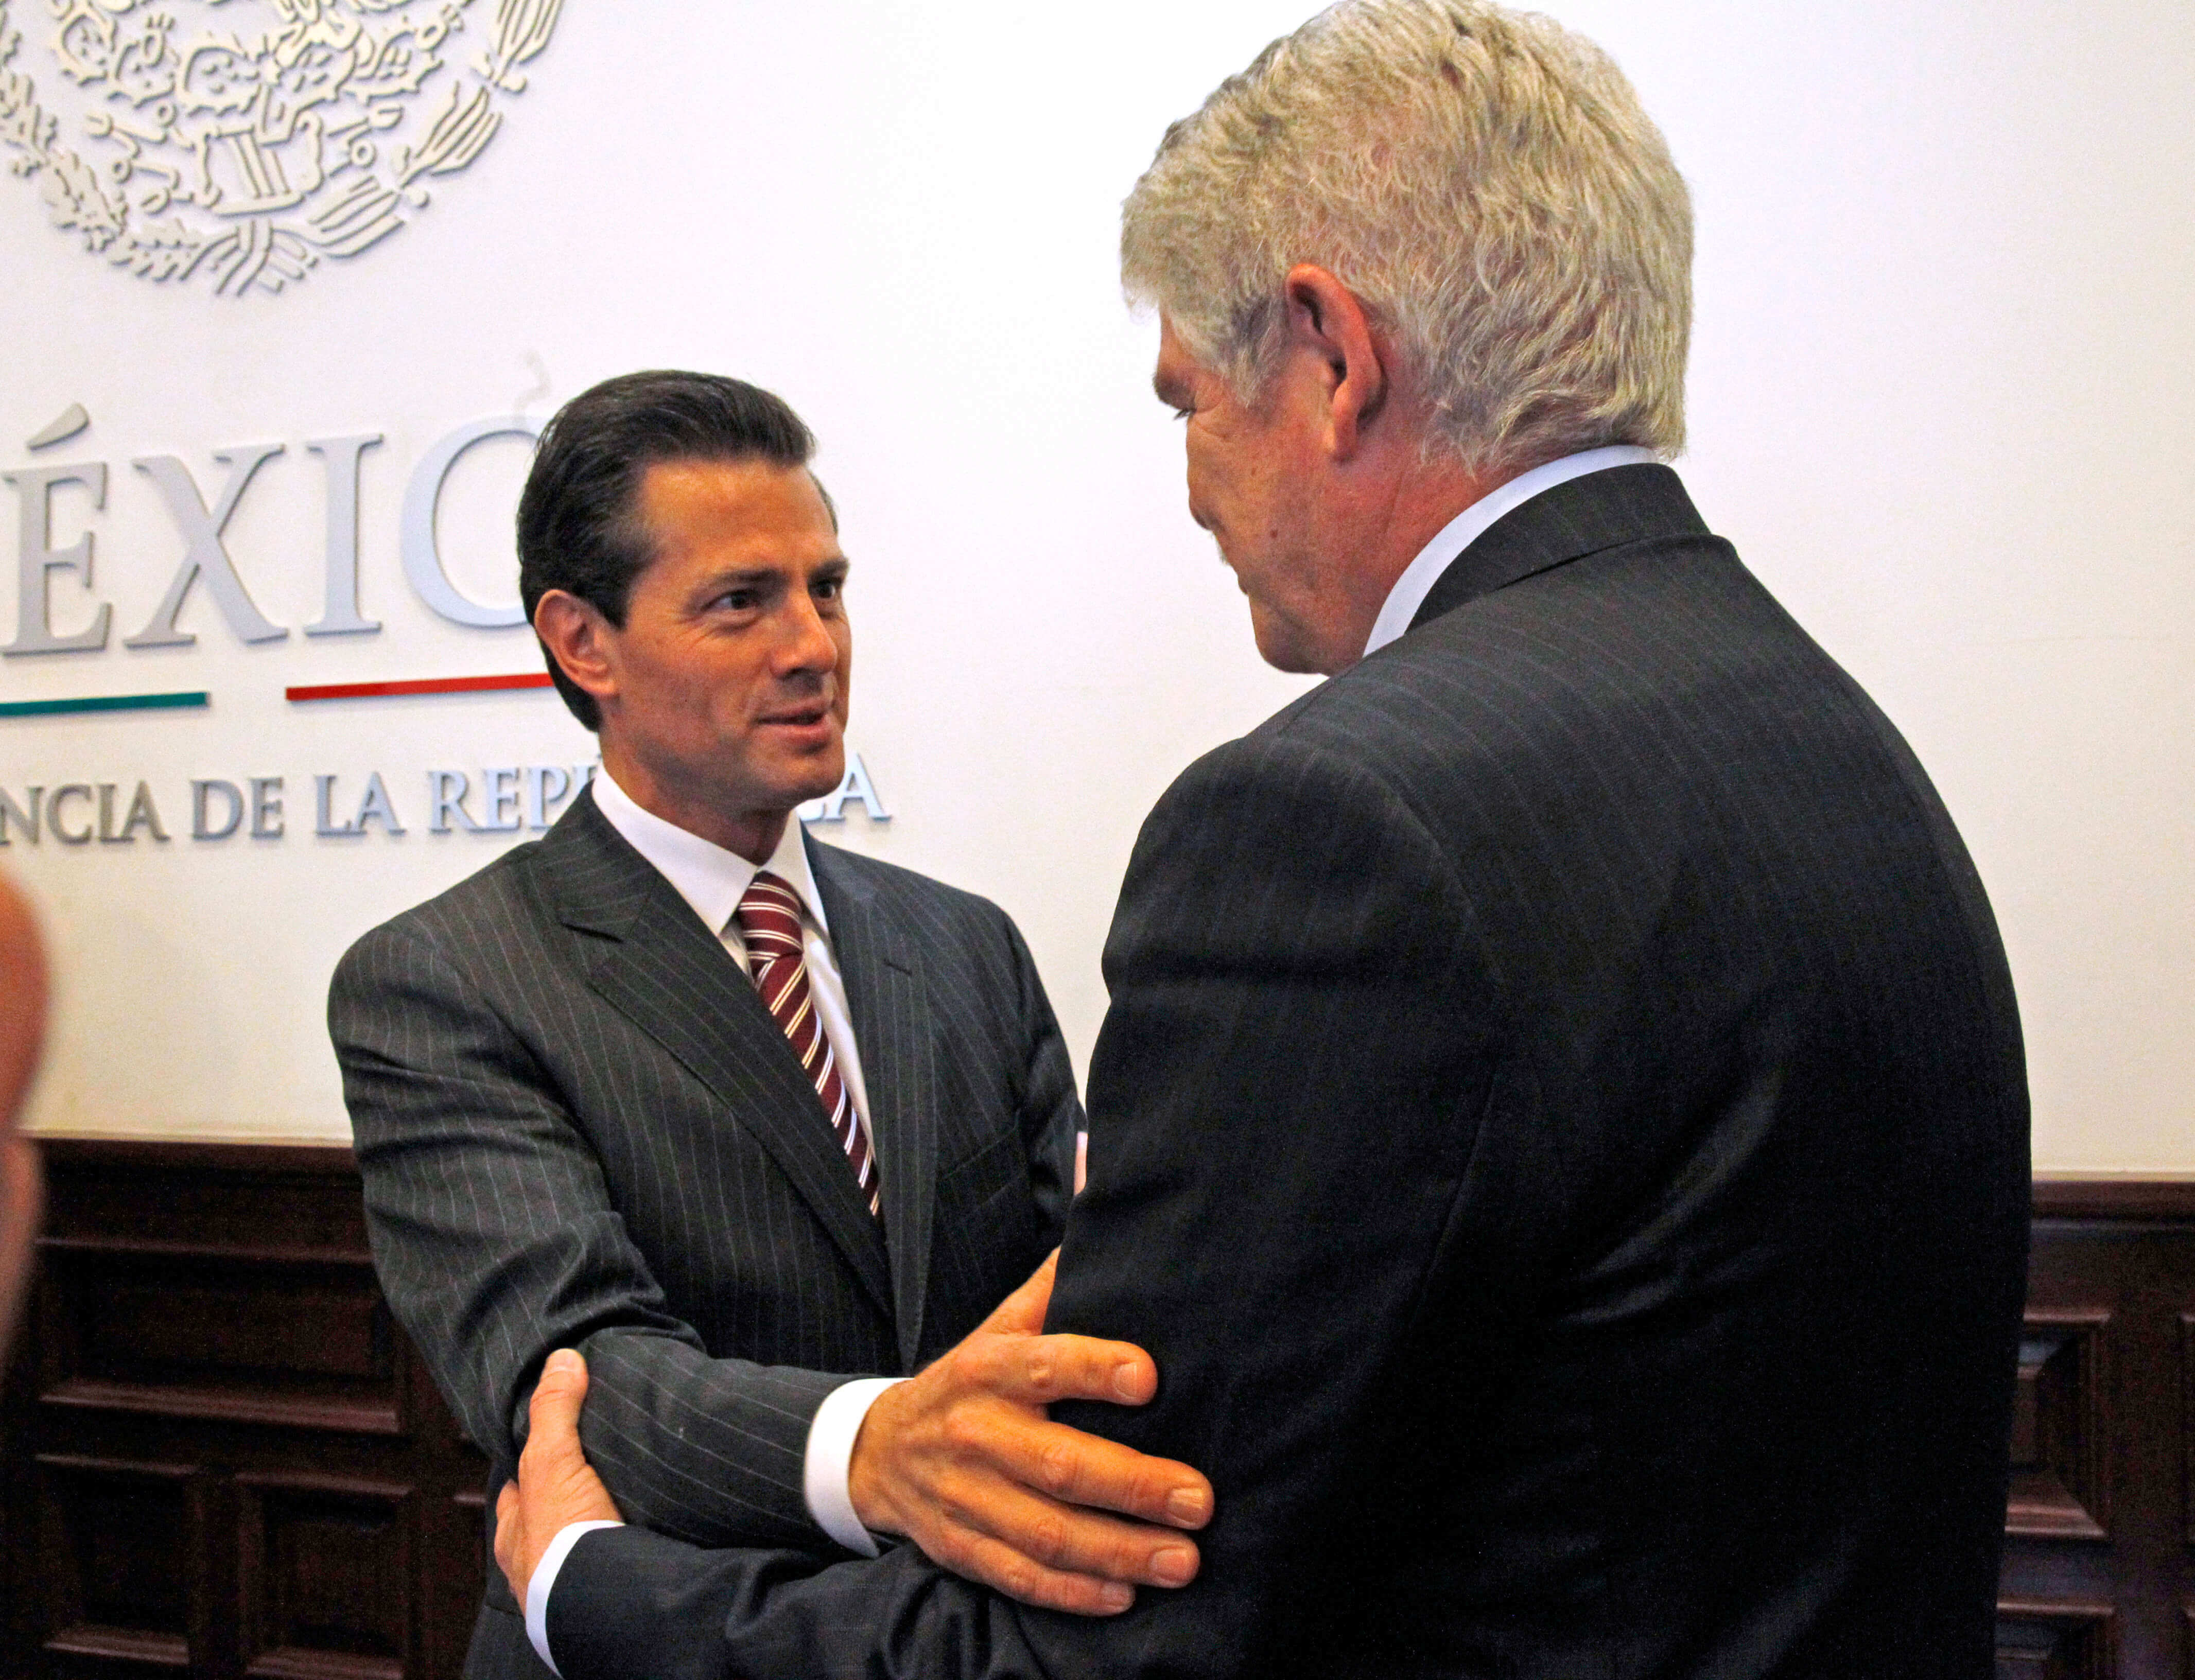 El presidente de la República, Enrique Peña Nieto, recibió esta tarde en la Residencia Oficial de Los Pinos al ministro de Asuntos Exteriores y de Cooperación del Reino de España, Alfonso Dastis Quecedo. (EFE)